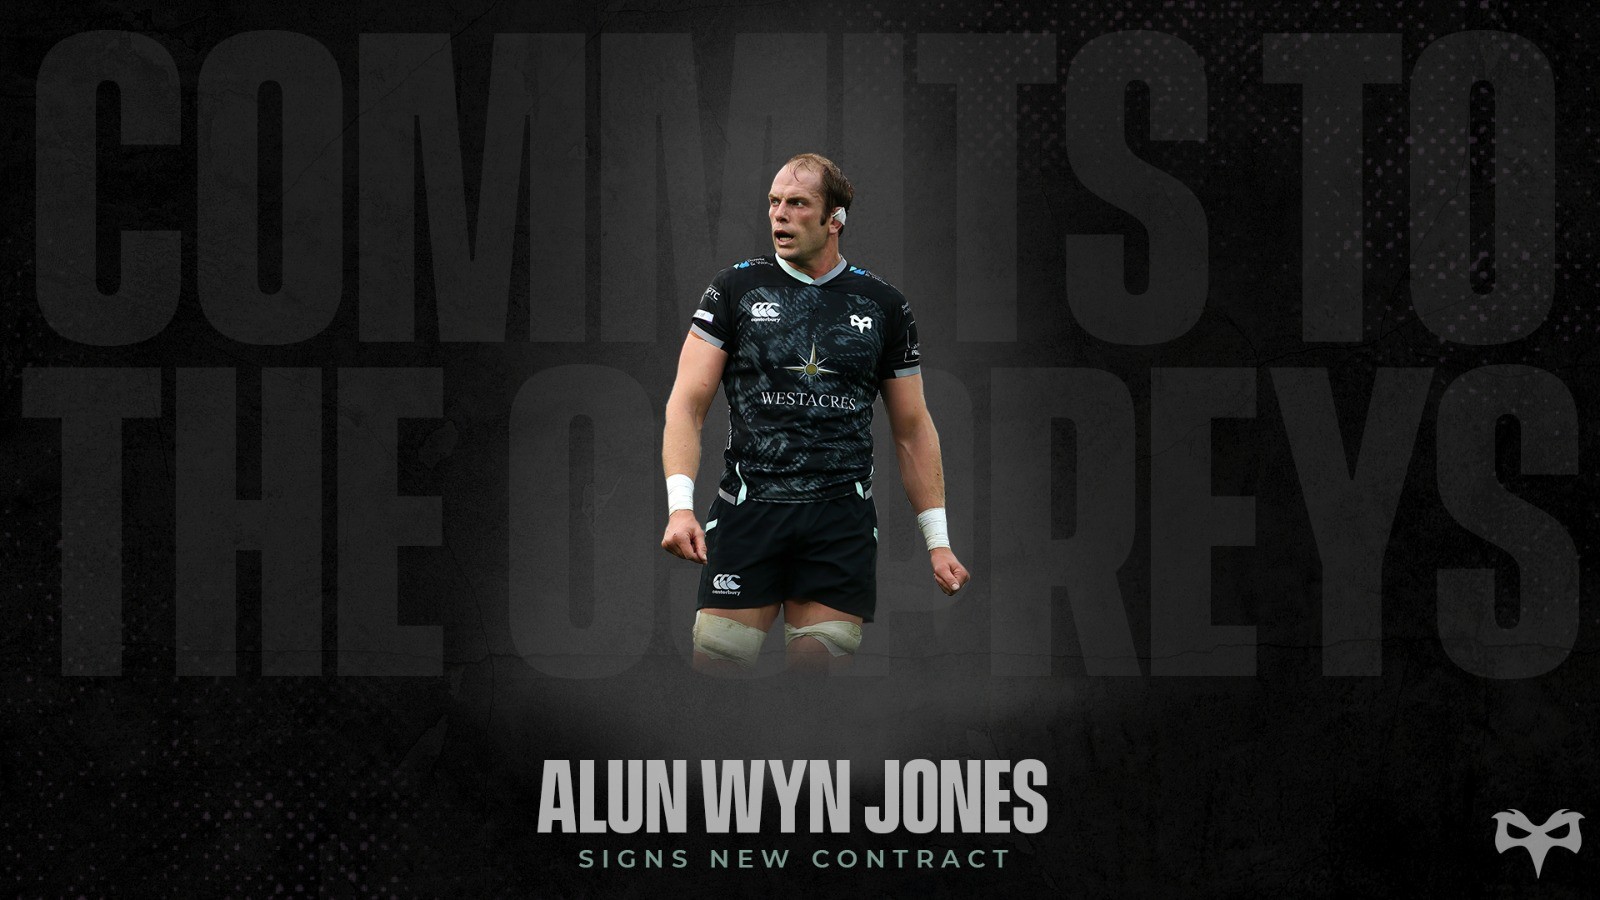 Alun Wyn Jones